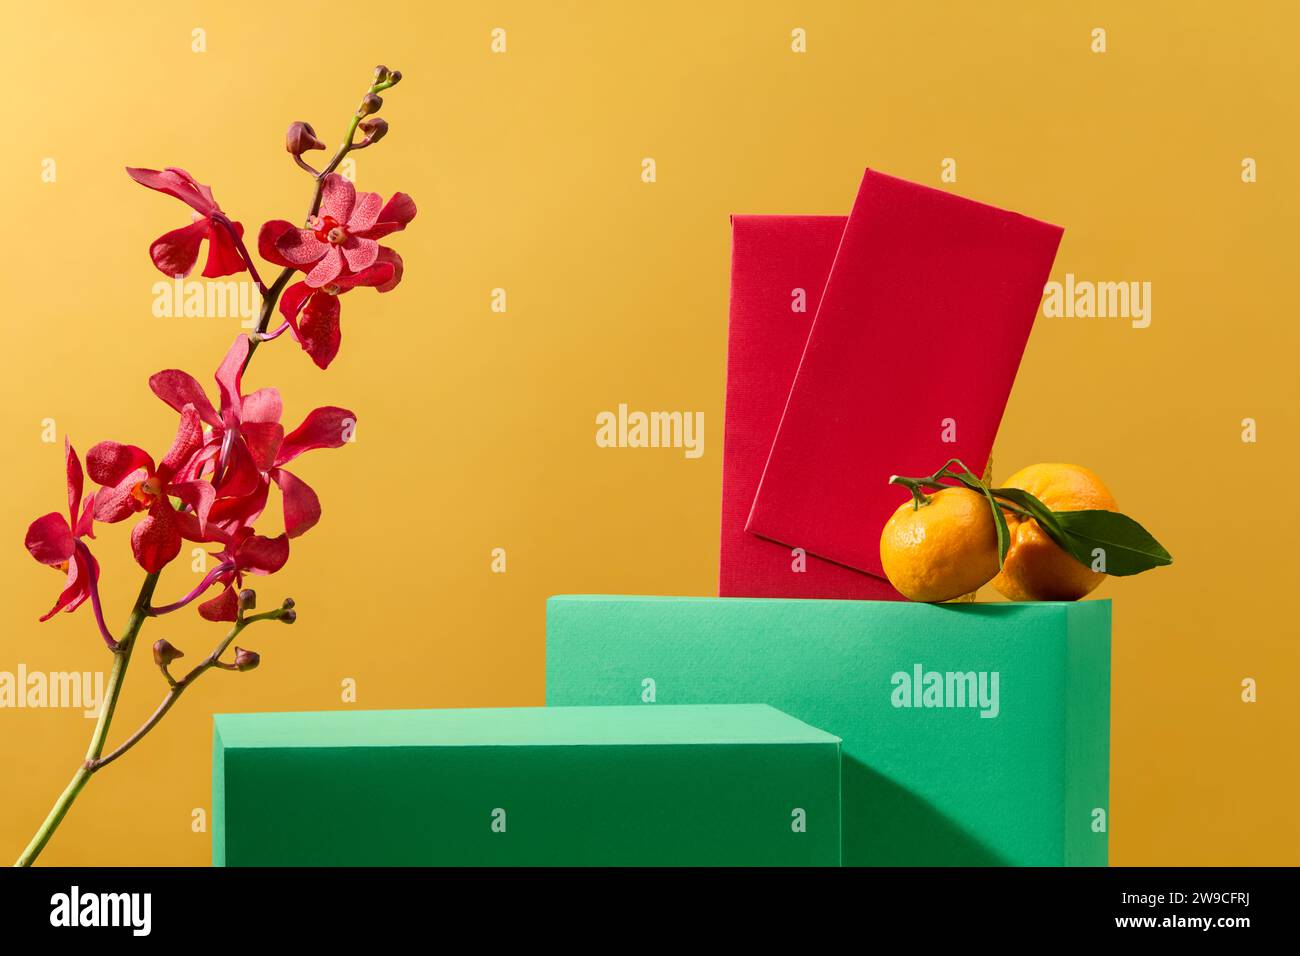 Buste rosse, vivaci orchidee e mandarini, il podio verde presenta i prodotti sullo sfondo giallo festoso, fornendo un ambiente ideale per un Foto Stock